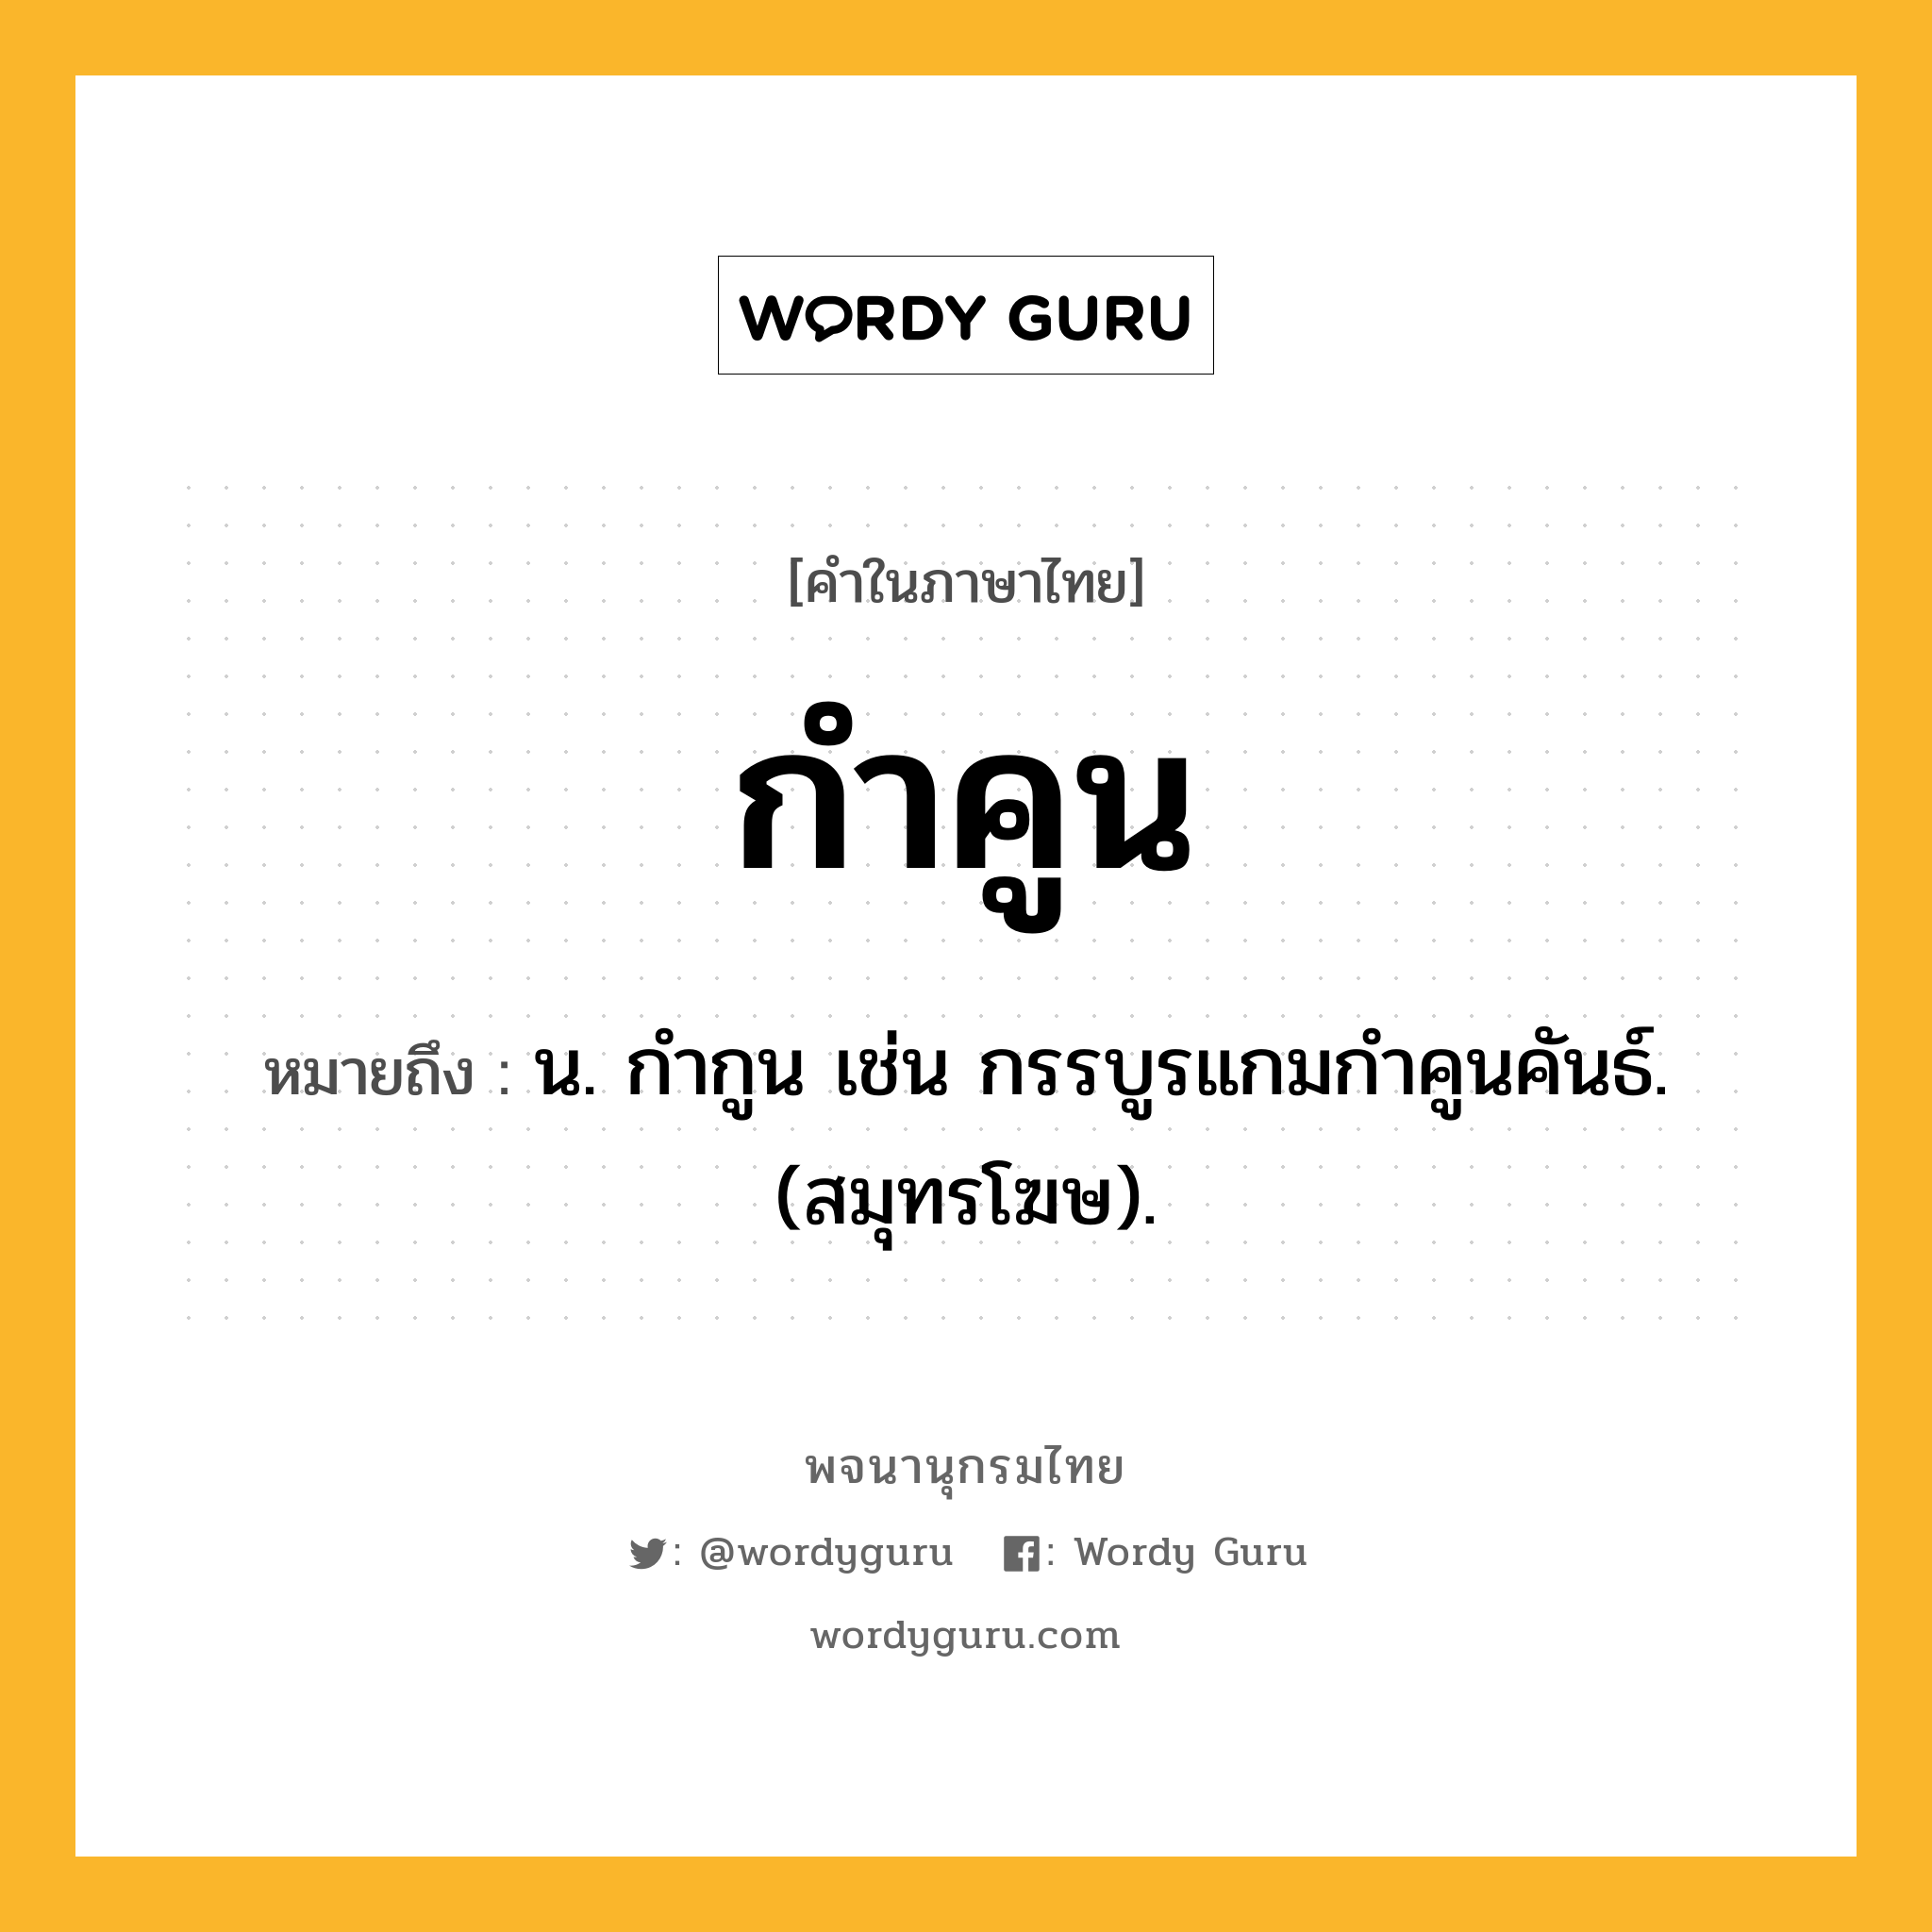 กำคูน ความหมาย หมายถึงอะไร?, คำในภาษาไทย กำคูน หมายถึง น. กํากูน เช่น กรรบูรแกมกําคูนคันธ์. (สมุทรโฆษ).